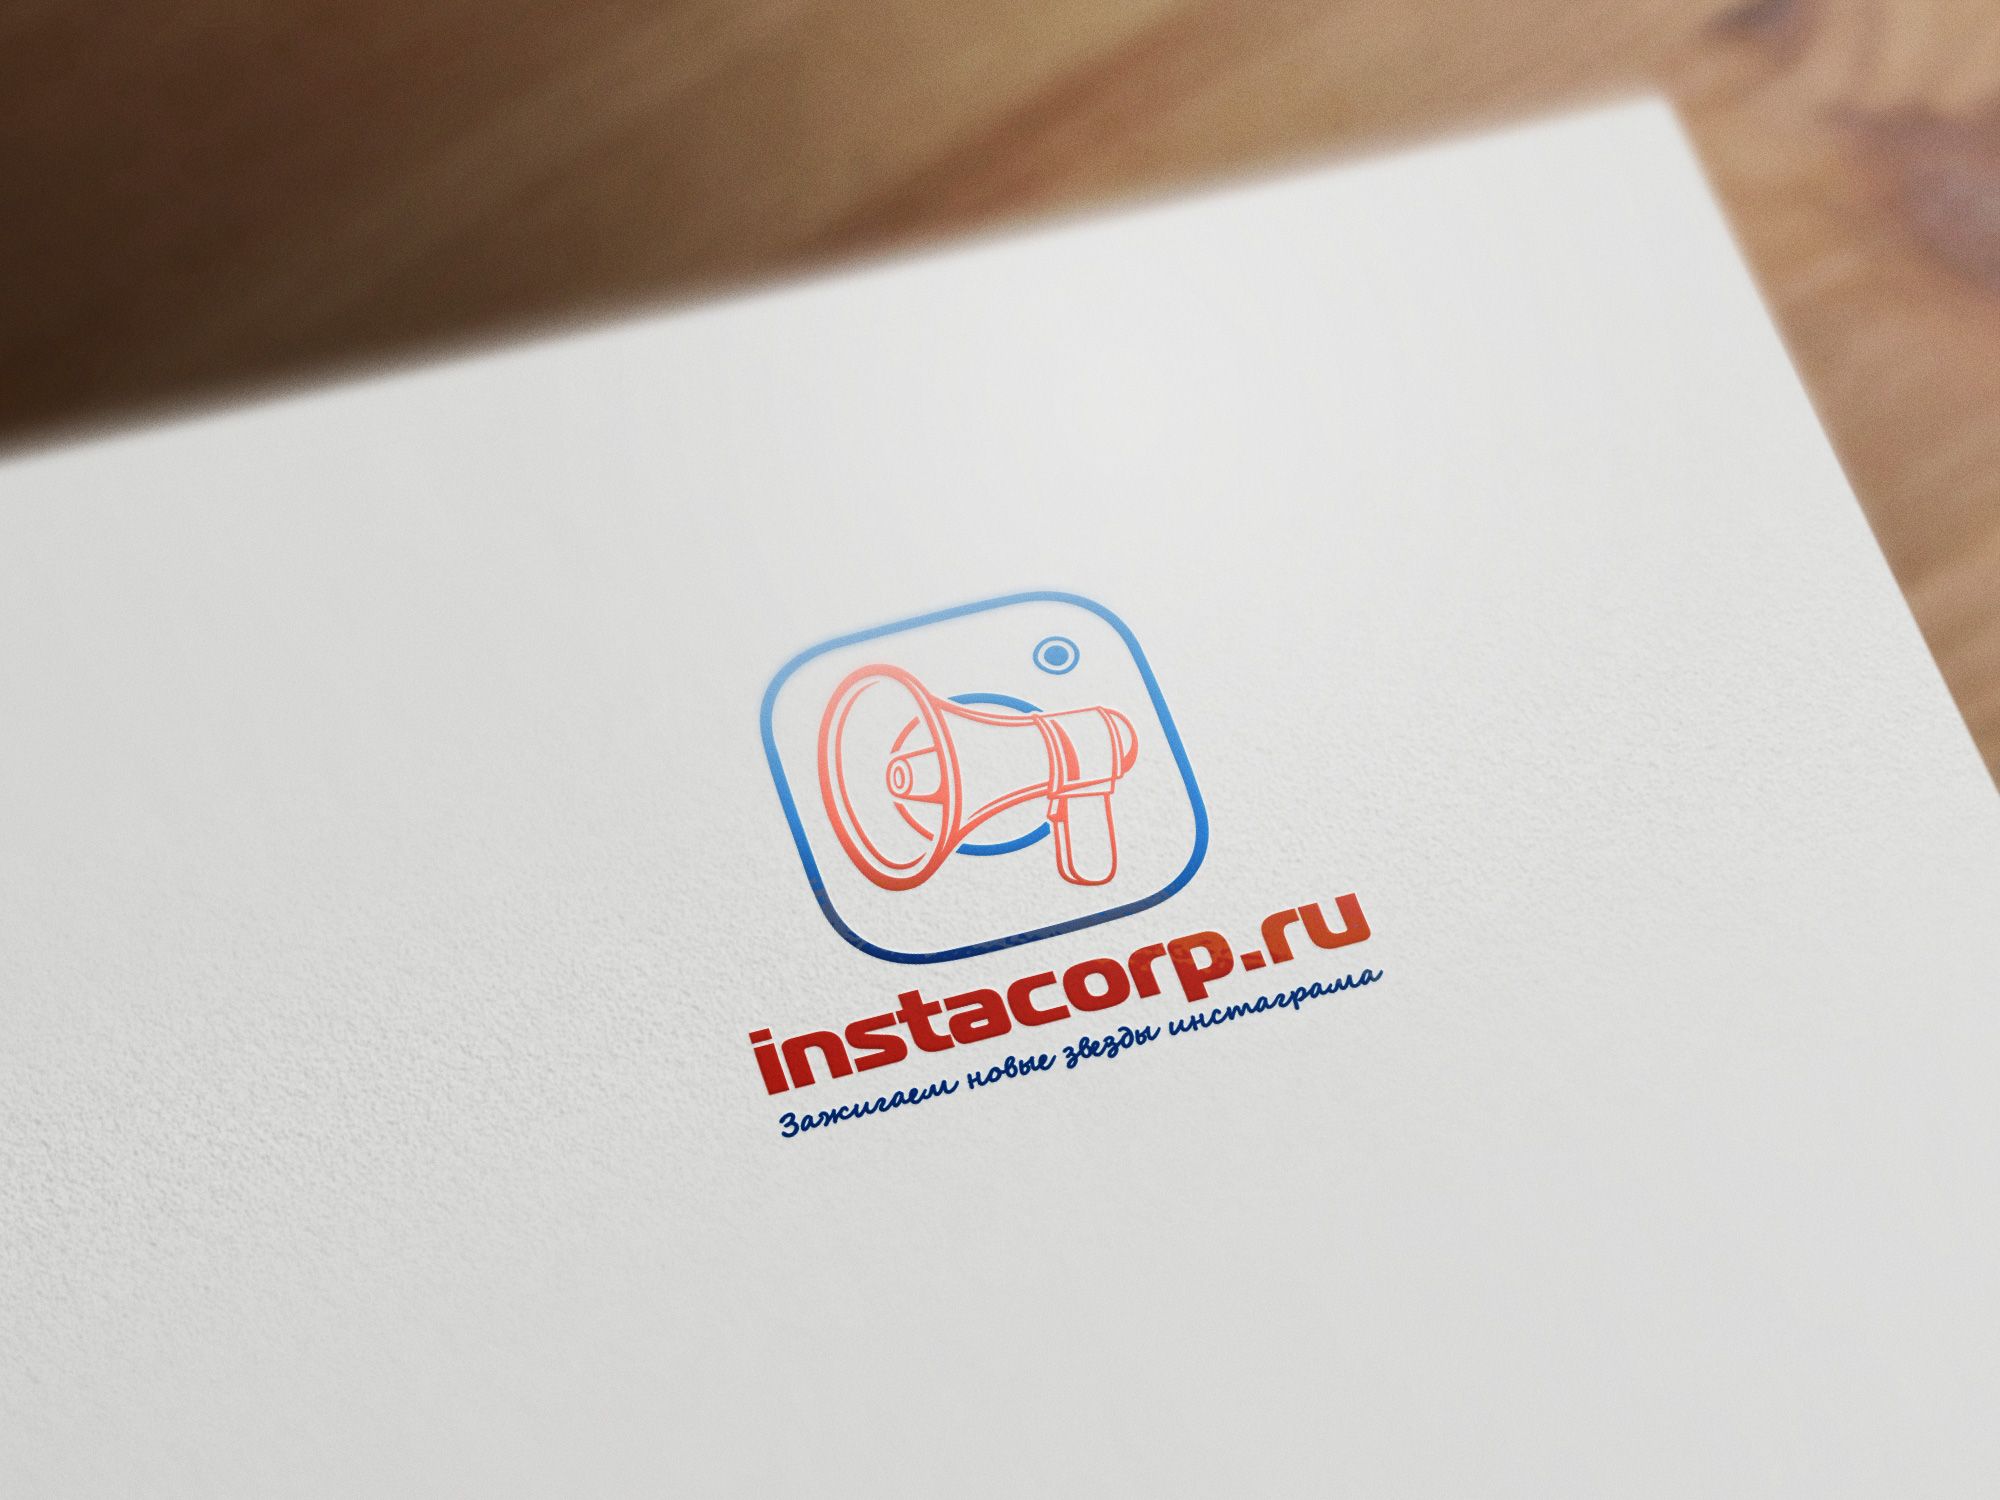 Логотип для instacorp - дизайнер Saidmir